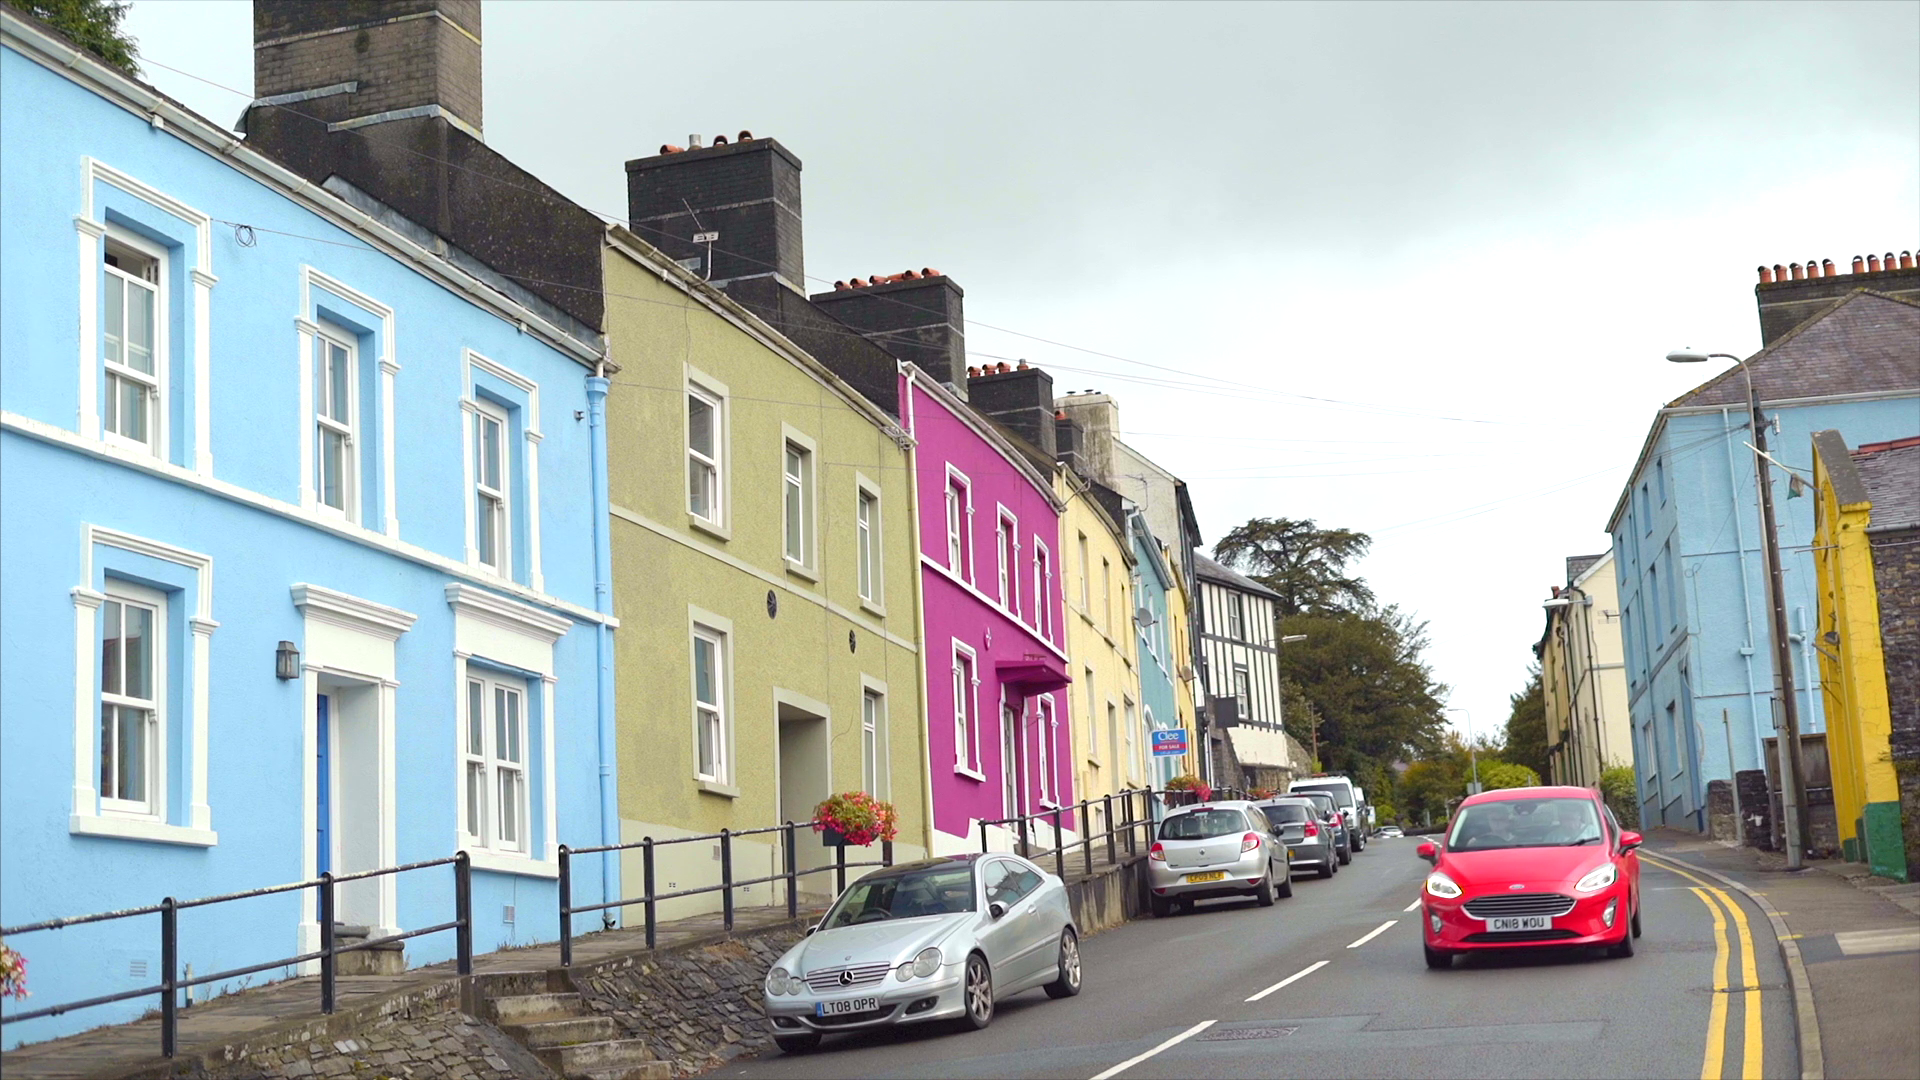 Bangunan di Desa Wales yang penuh warna.